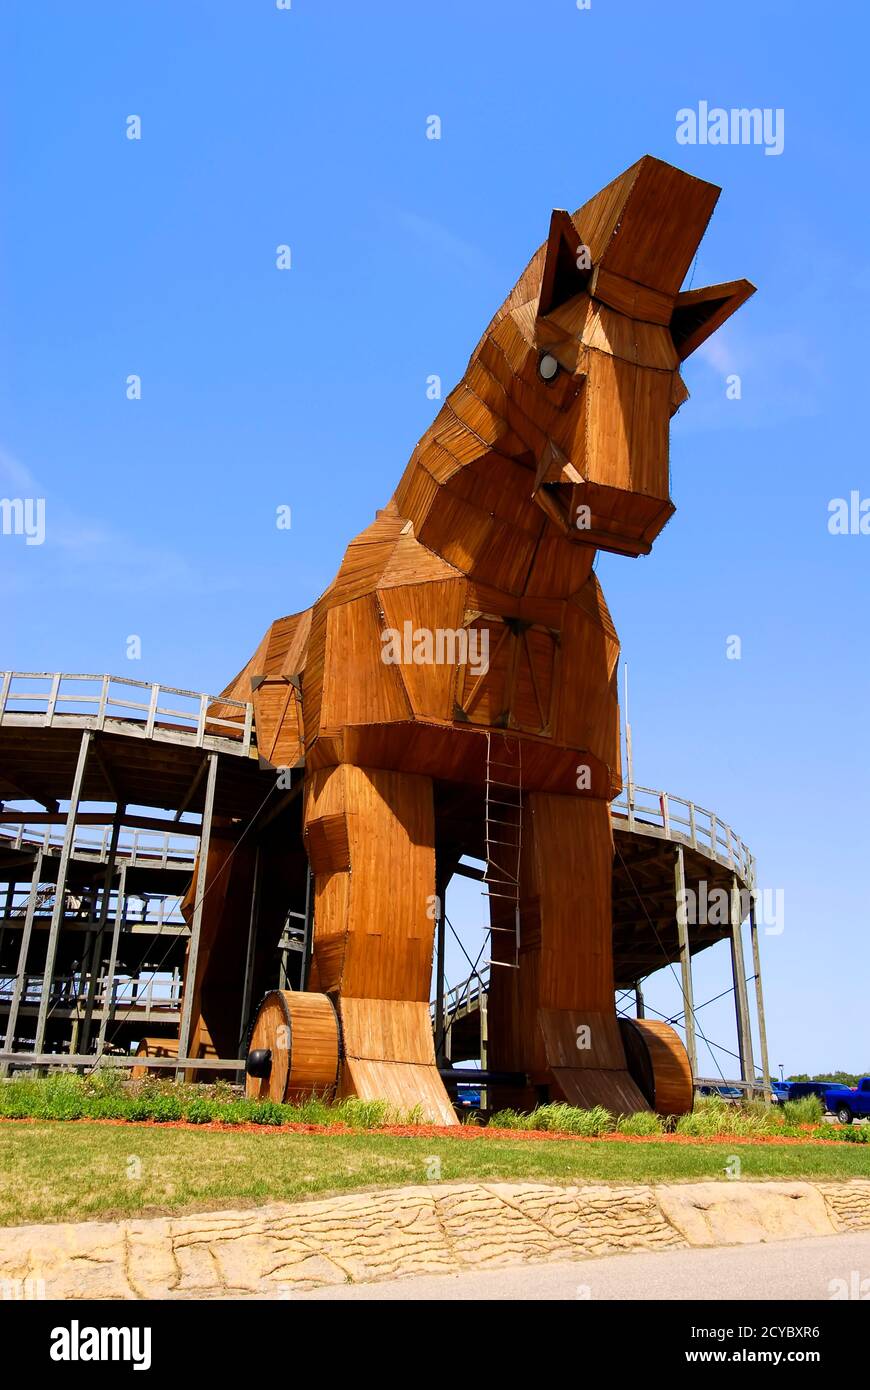 Trojanisches Pferd im Mt Olympus Theme Park, Wisconsin Dells, WI ist eine Hauptattraktion im Wisconsin Dells in Wisconsin und nur ein beliebtes Resortgebiet Stockfoto